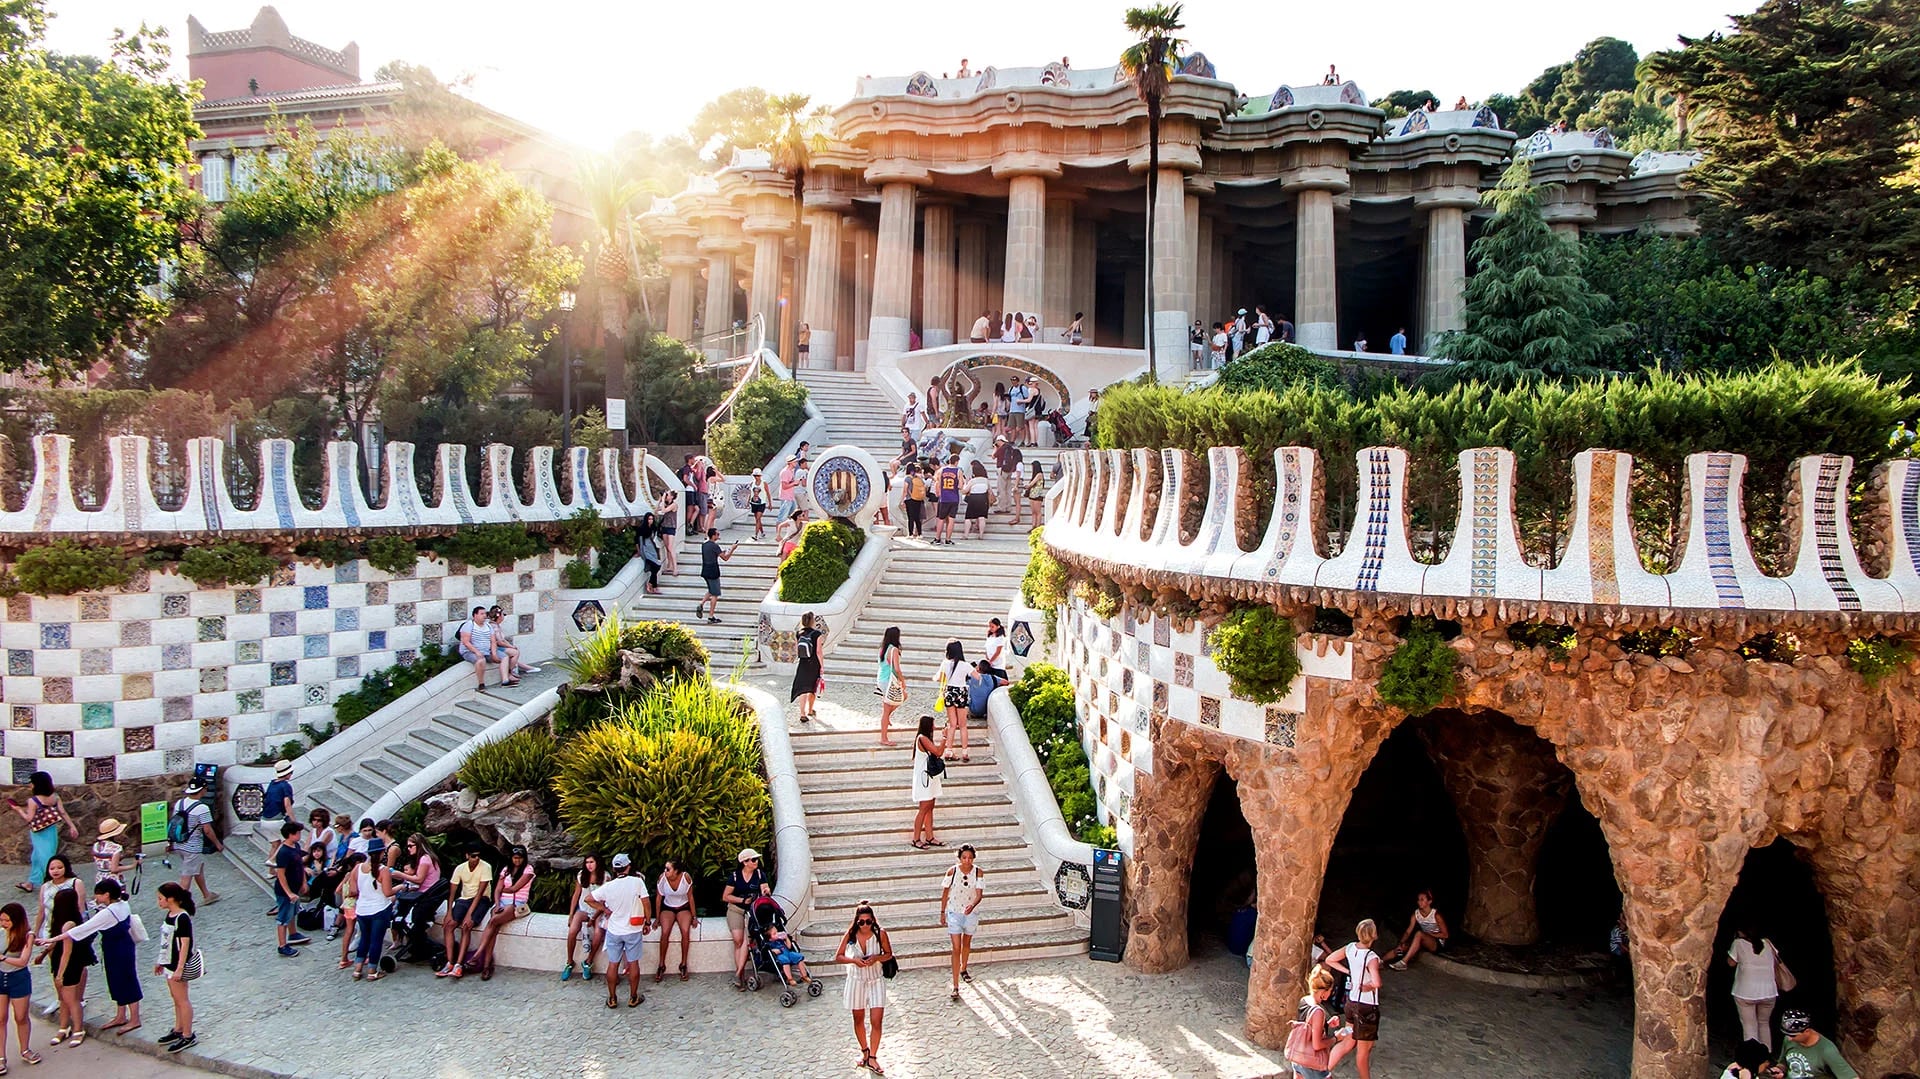 El parque Güell fue un encargo de Eusebi Güell que quería crear un parque de diseño para la aristocracia de Barcelona